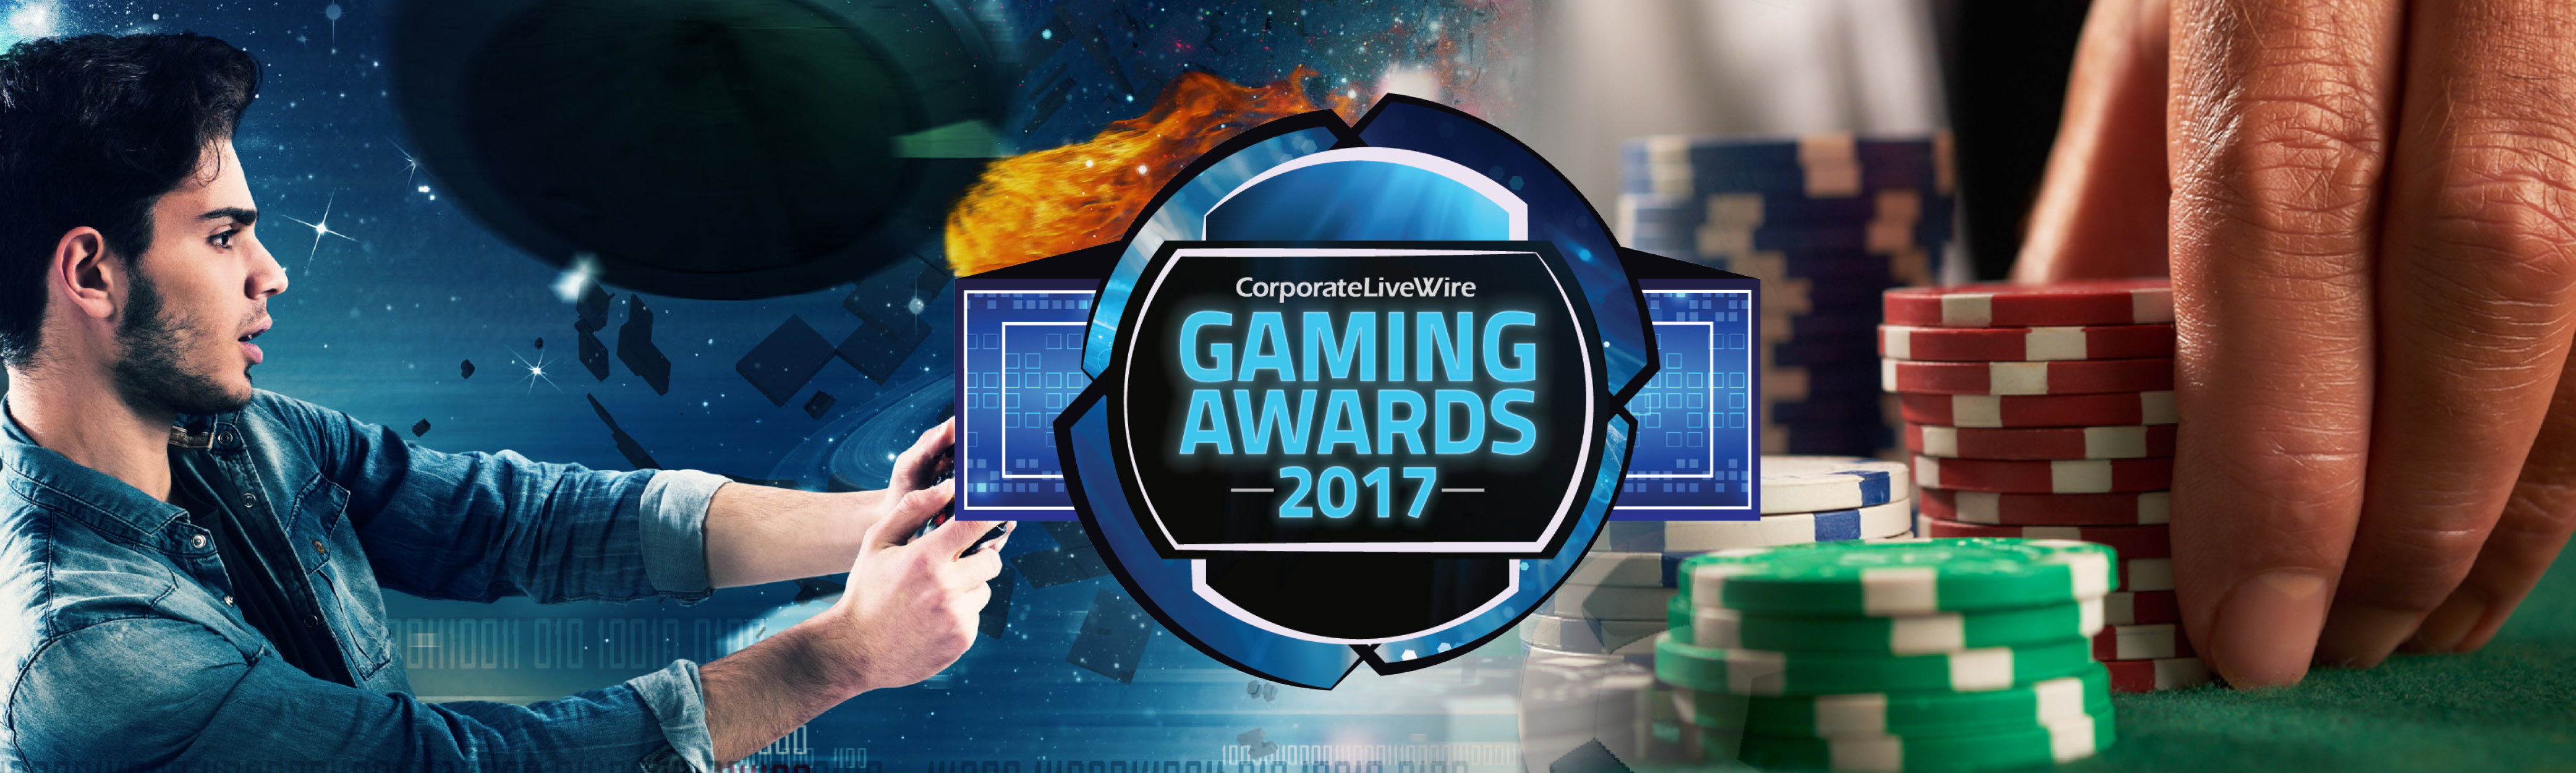 Gaming Awards 2017